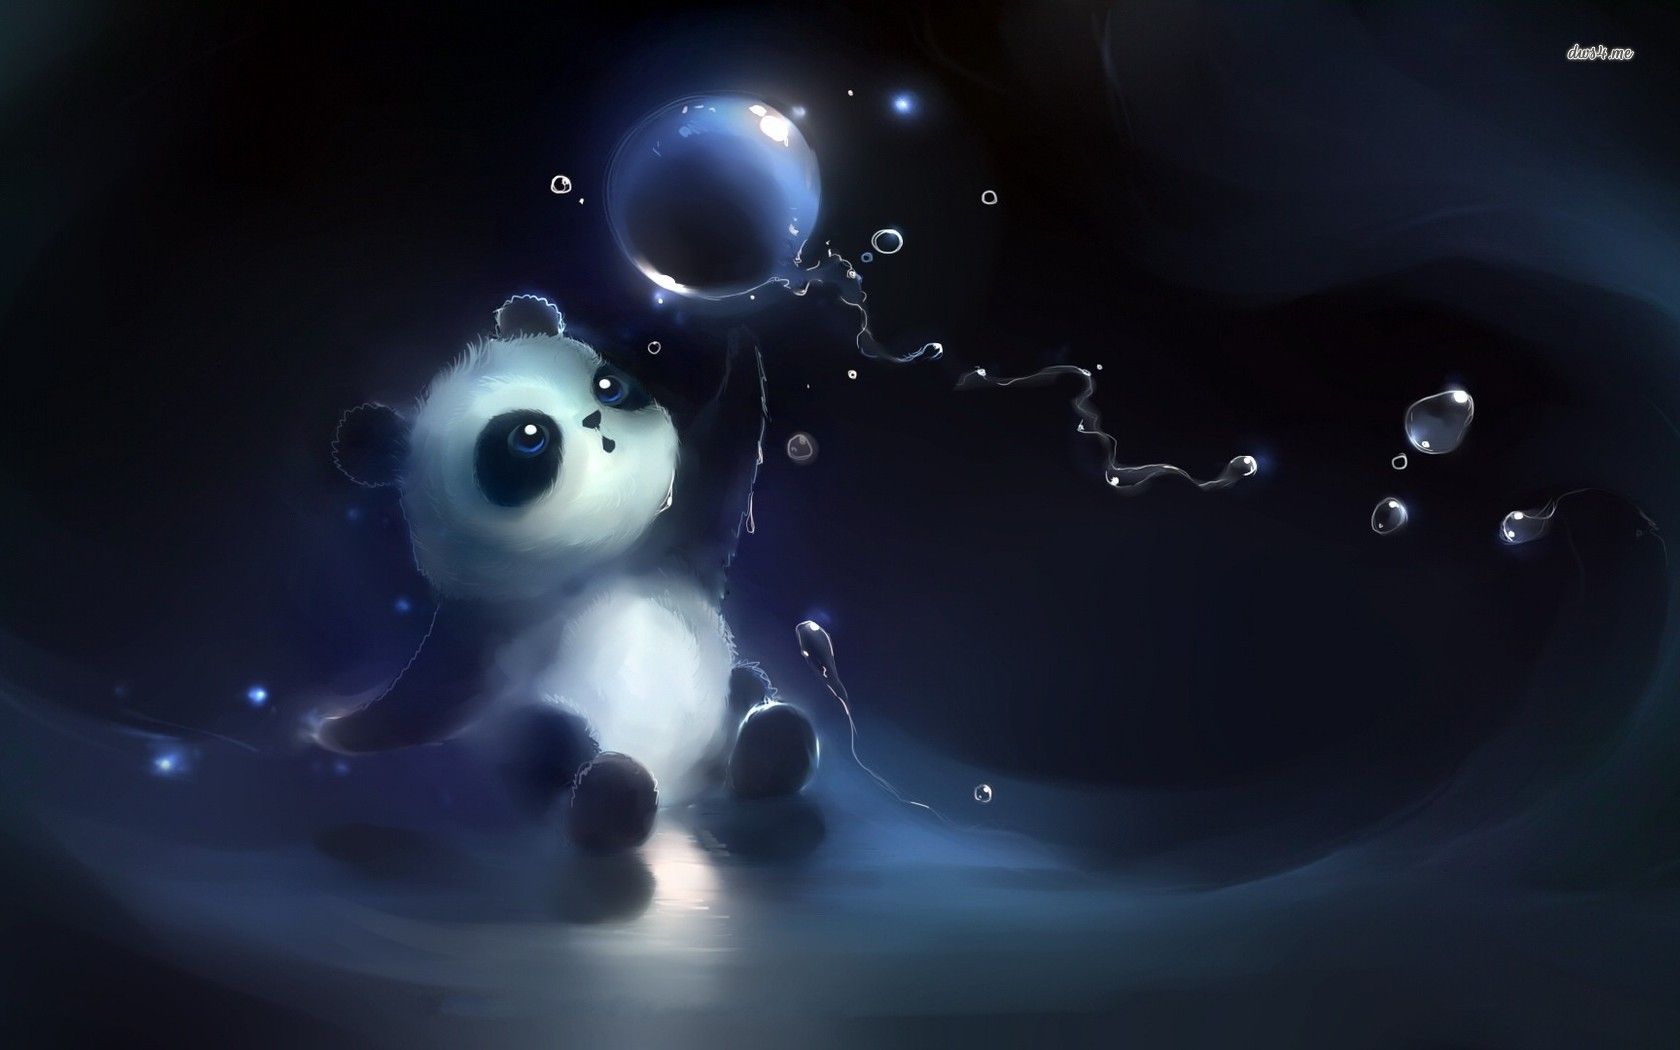 cute bubble panda wallpaper, Cute panda wallpaper, Cute panda cartoon